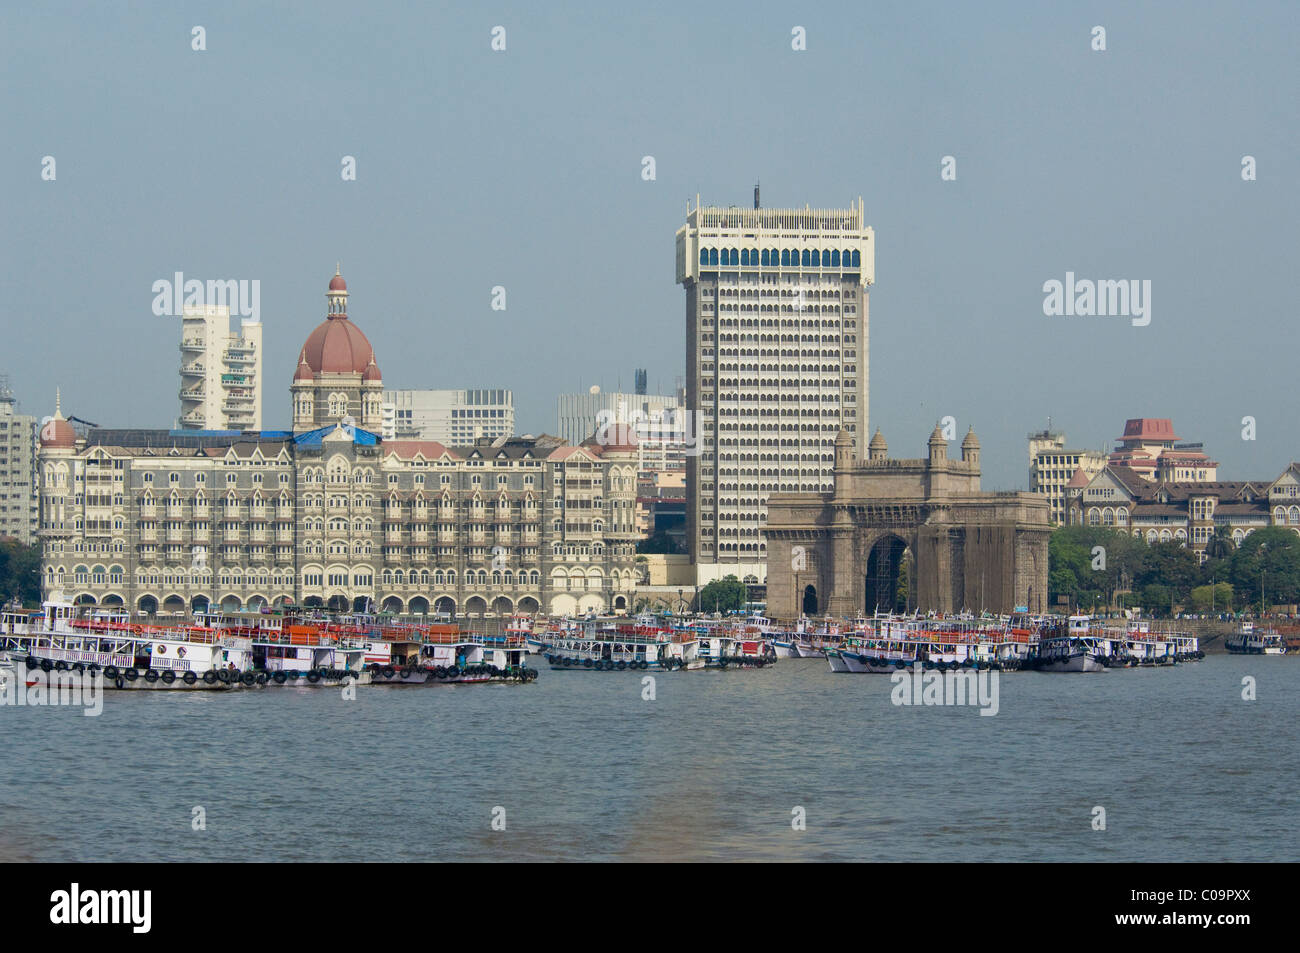 India, state of Maharashtra, Mumbai (aka Bombay). Waterfront area of Mumbai, historic Taj Mahal Hotel & Arch. Stock Photo